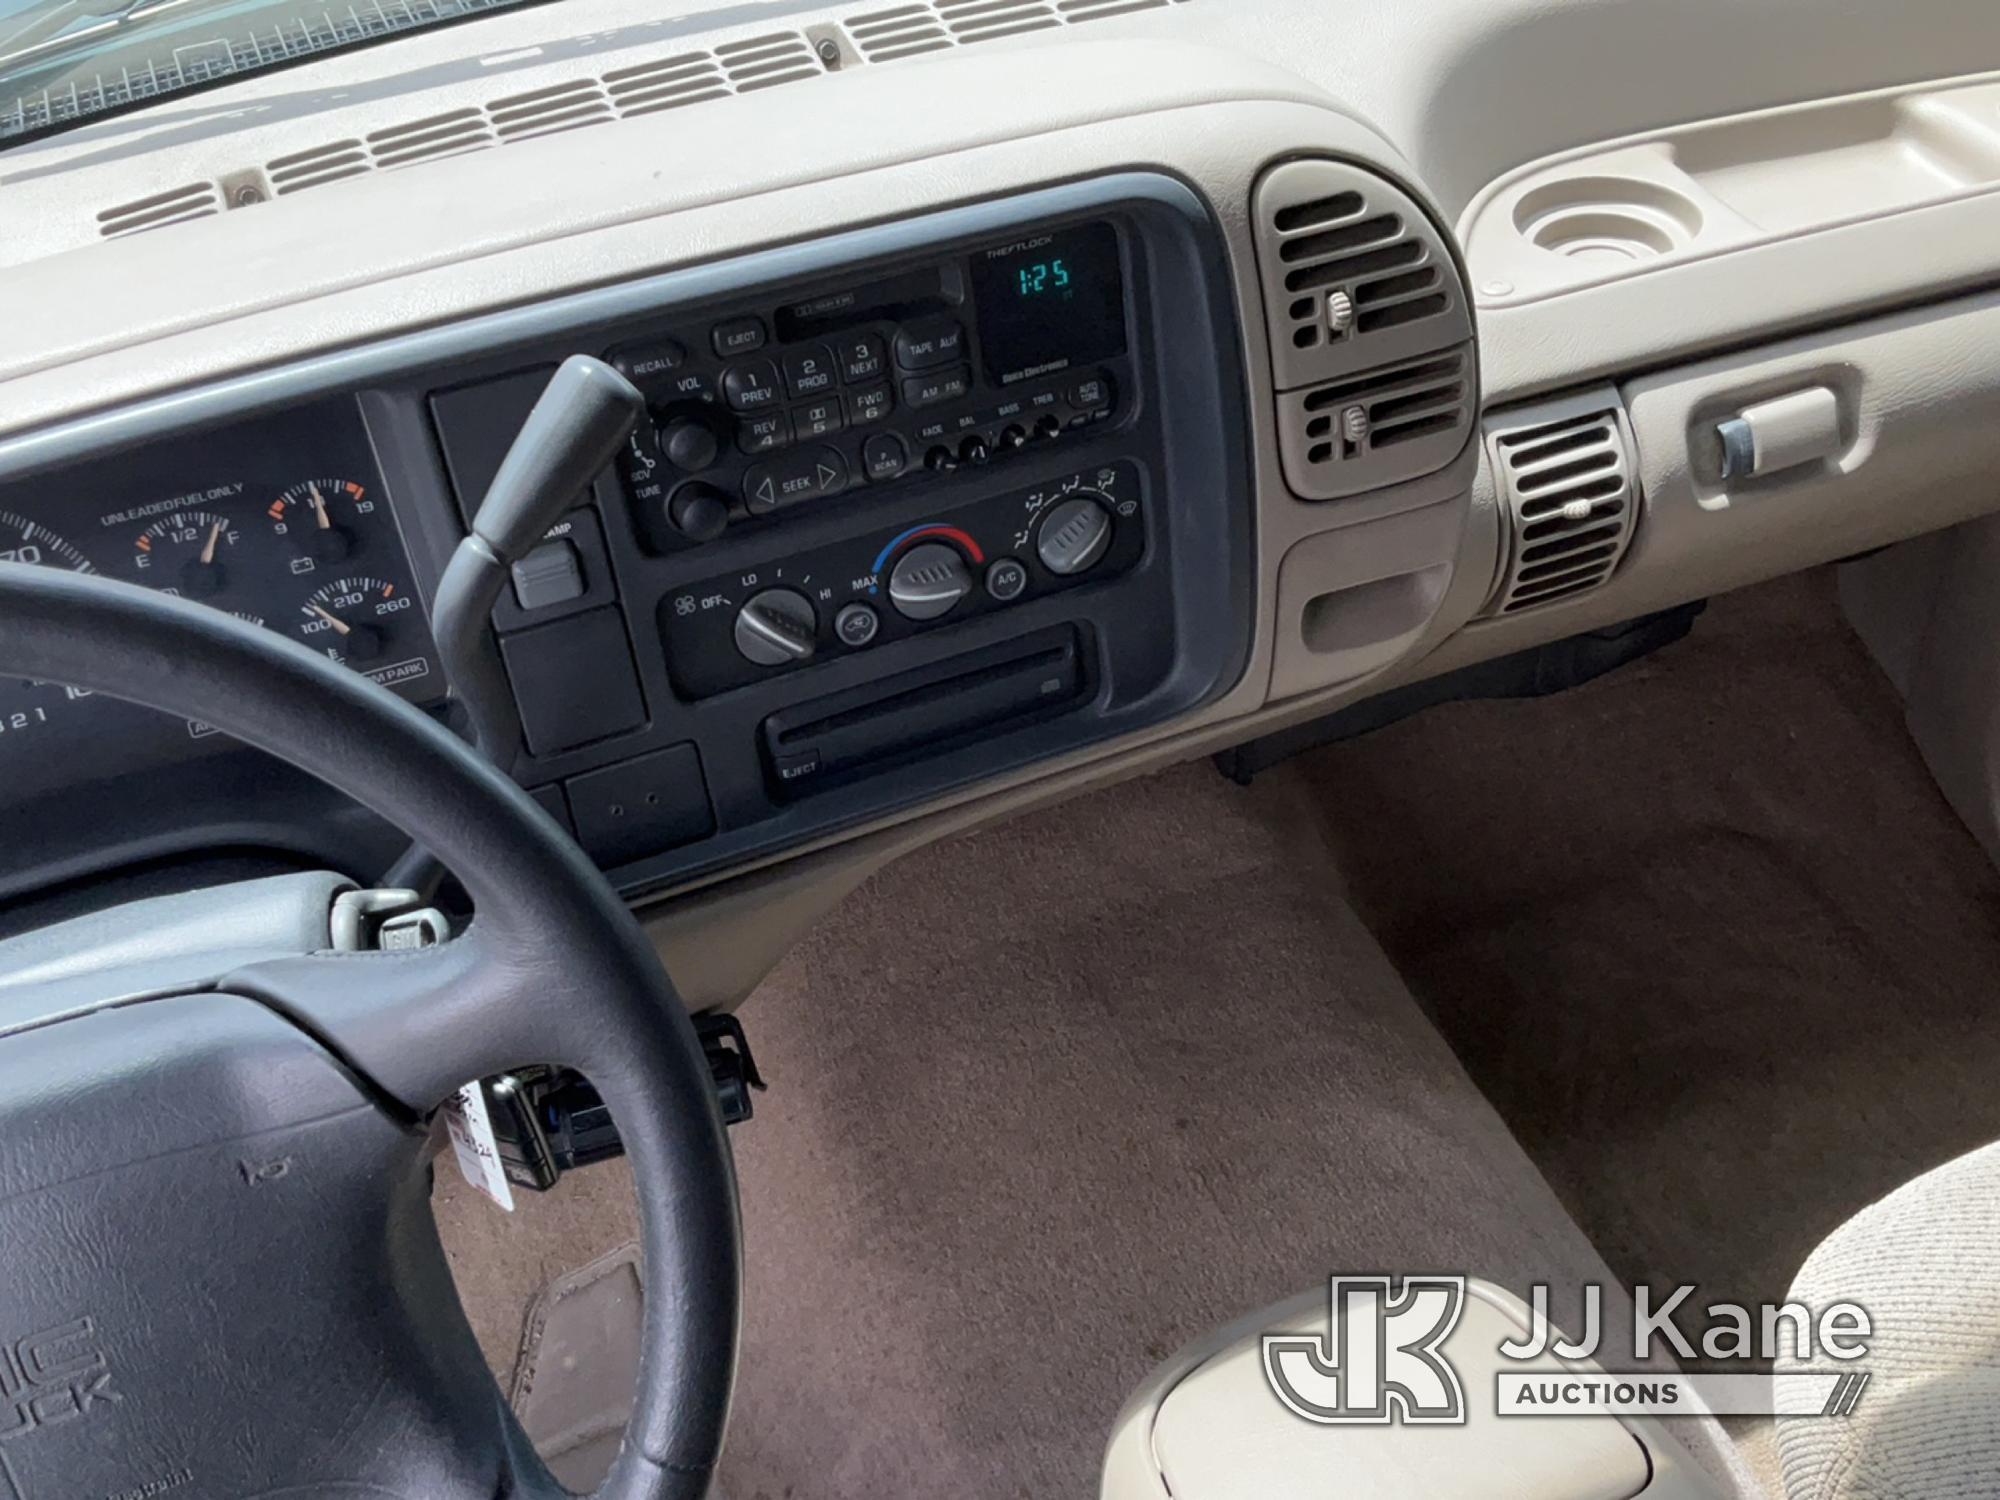 (Salt Lake City, UT) 1996 GMC Sierra 1500 Extended-Cab Pickup Truck Runs & Moves